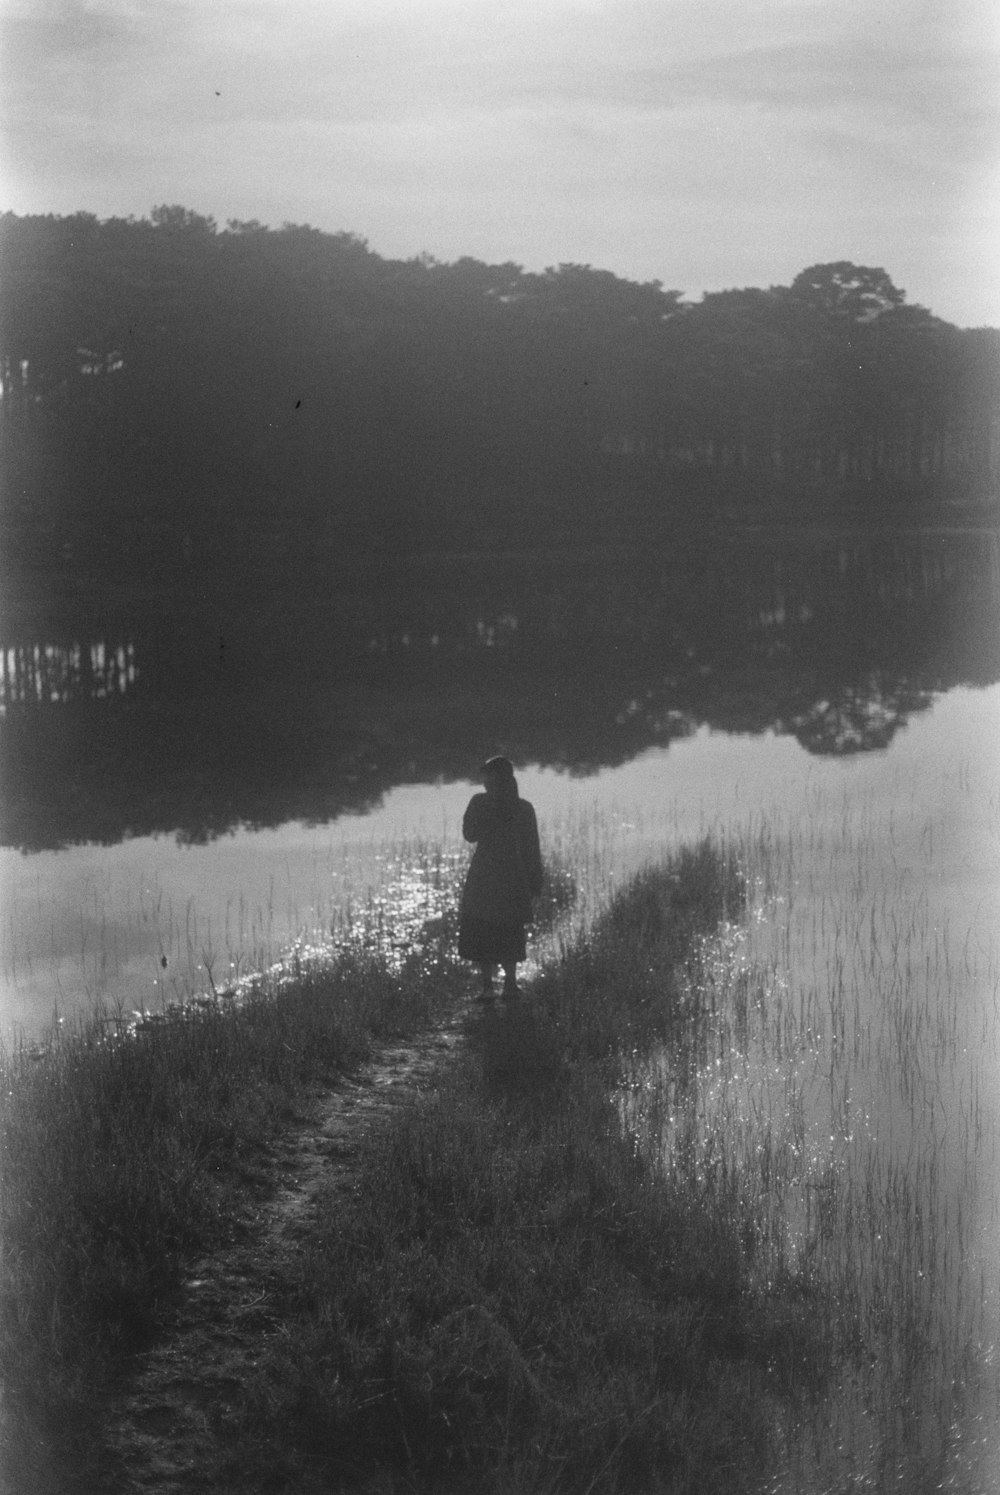 Una foto en blanco y negro de una persona caminando por un sendero cerca de un lago